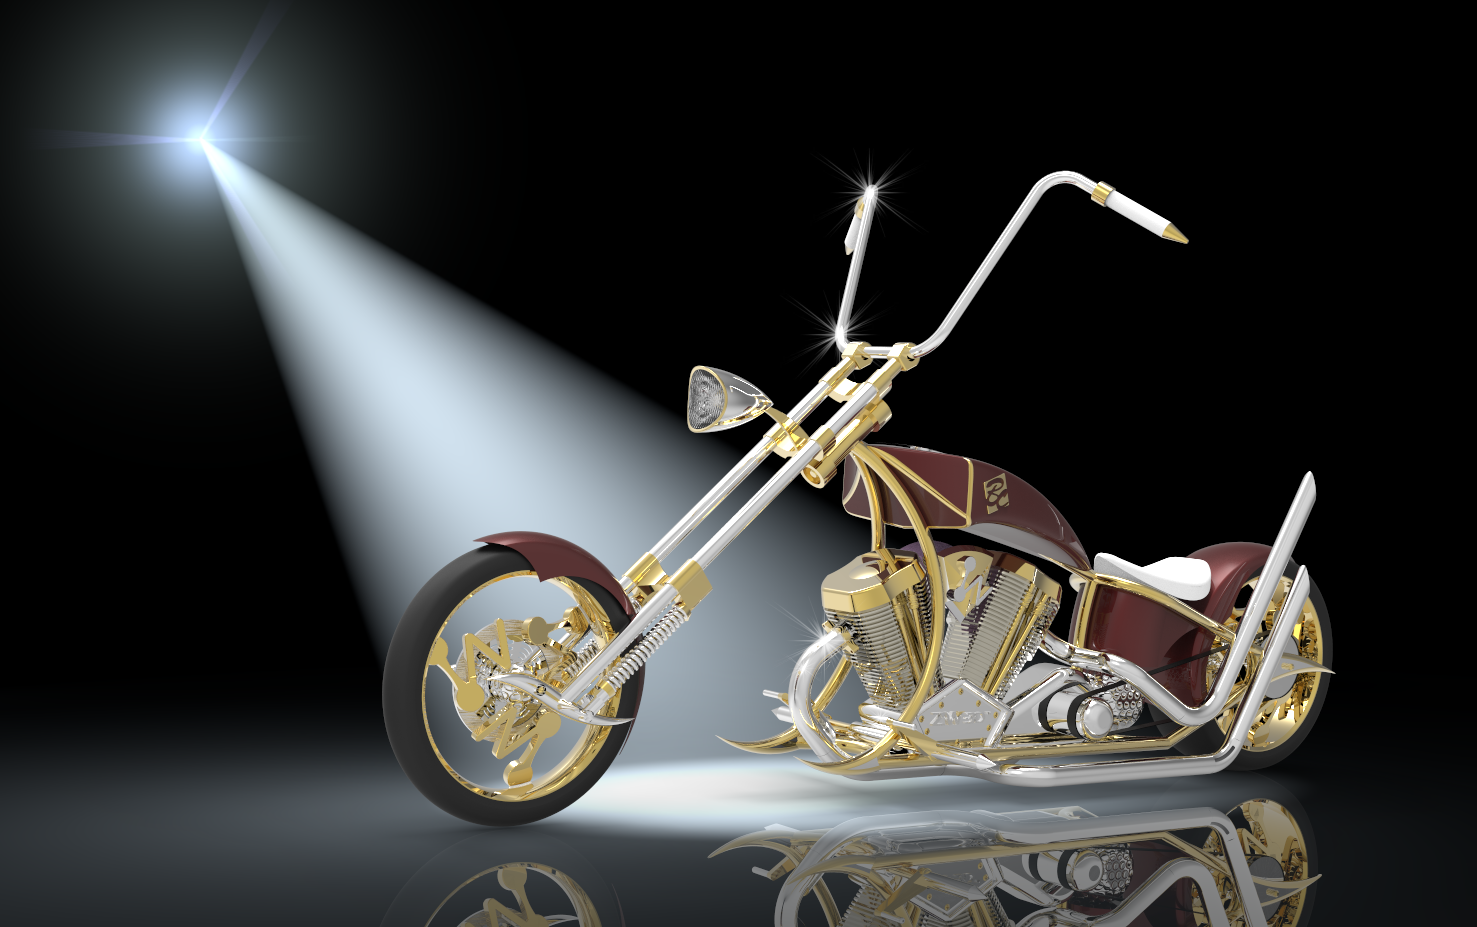 w中望3d设计的chopper摩托车图纸